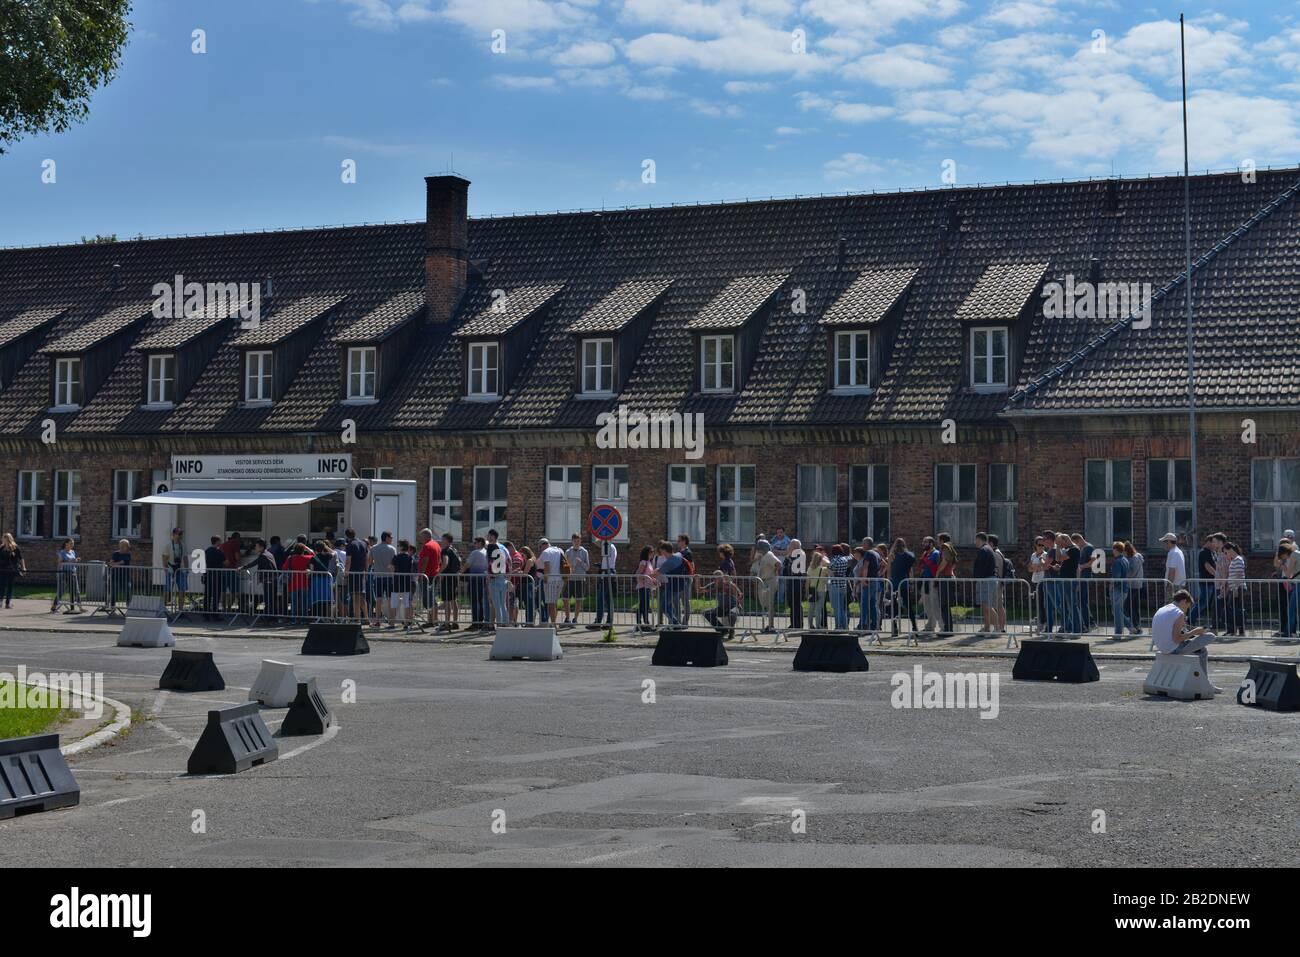 Besucherzentrum, Stammlager I, Konzentrationslager, Auschwitz-Birkenau, Auschwitz, Polen Stock Photo